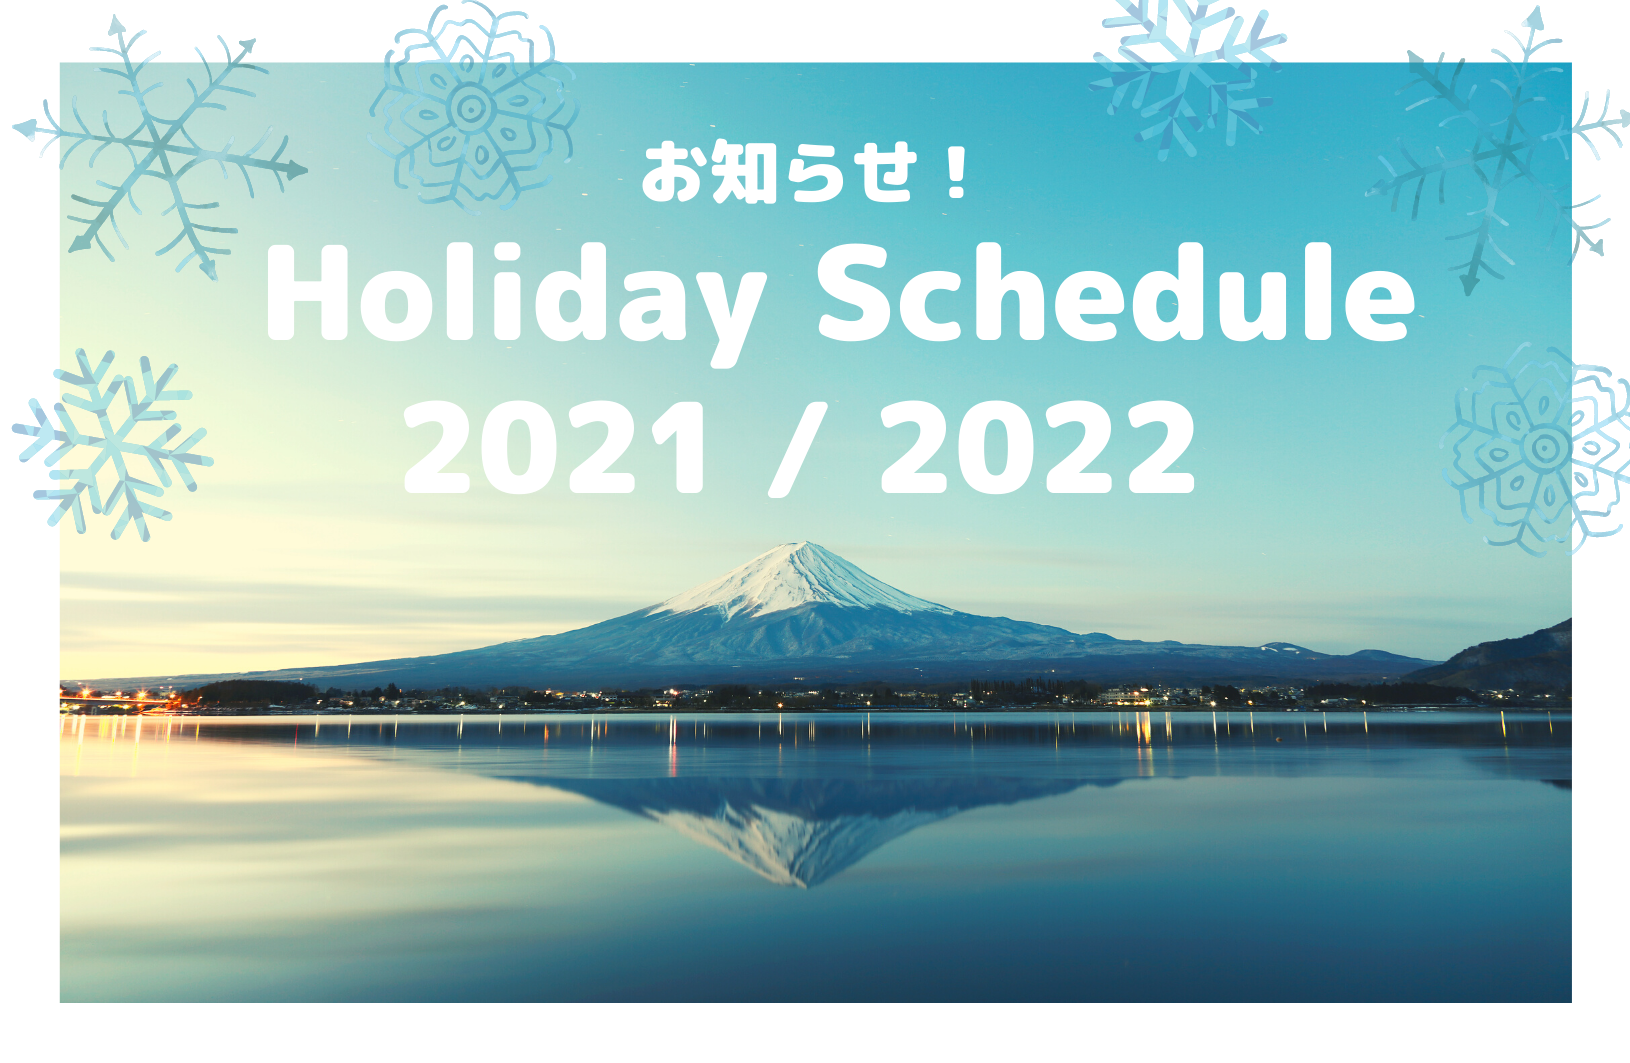 Kyoto Handicraft Center Online Store Holiday Schedule 2021 / 2022